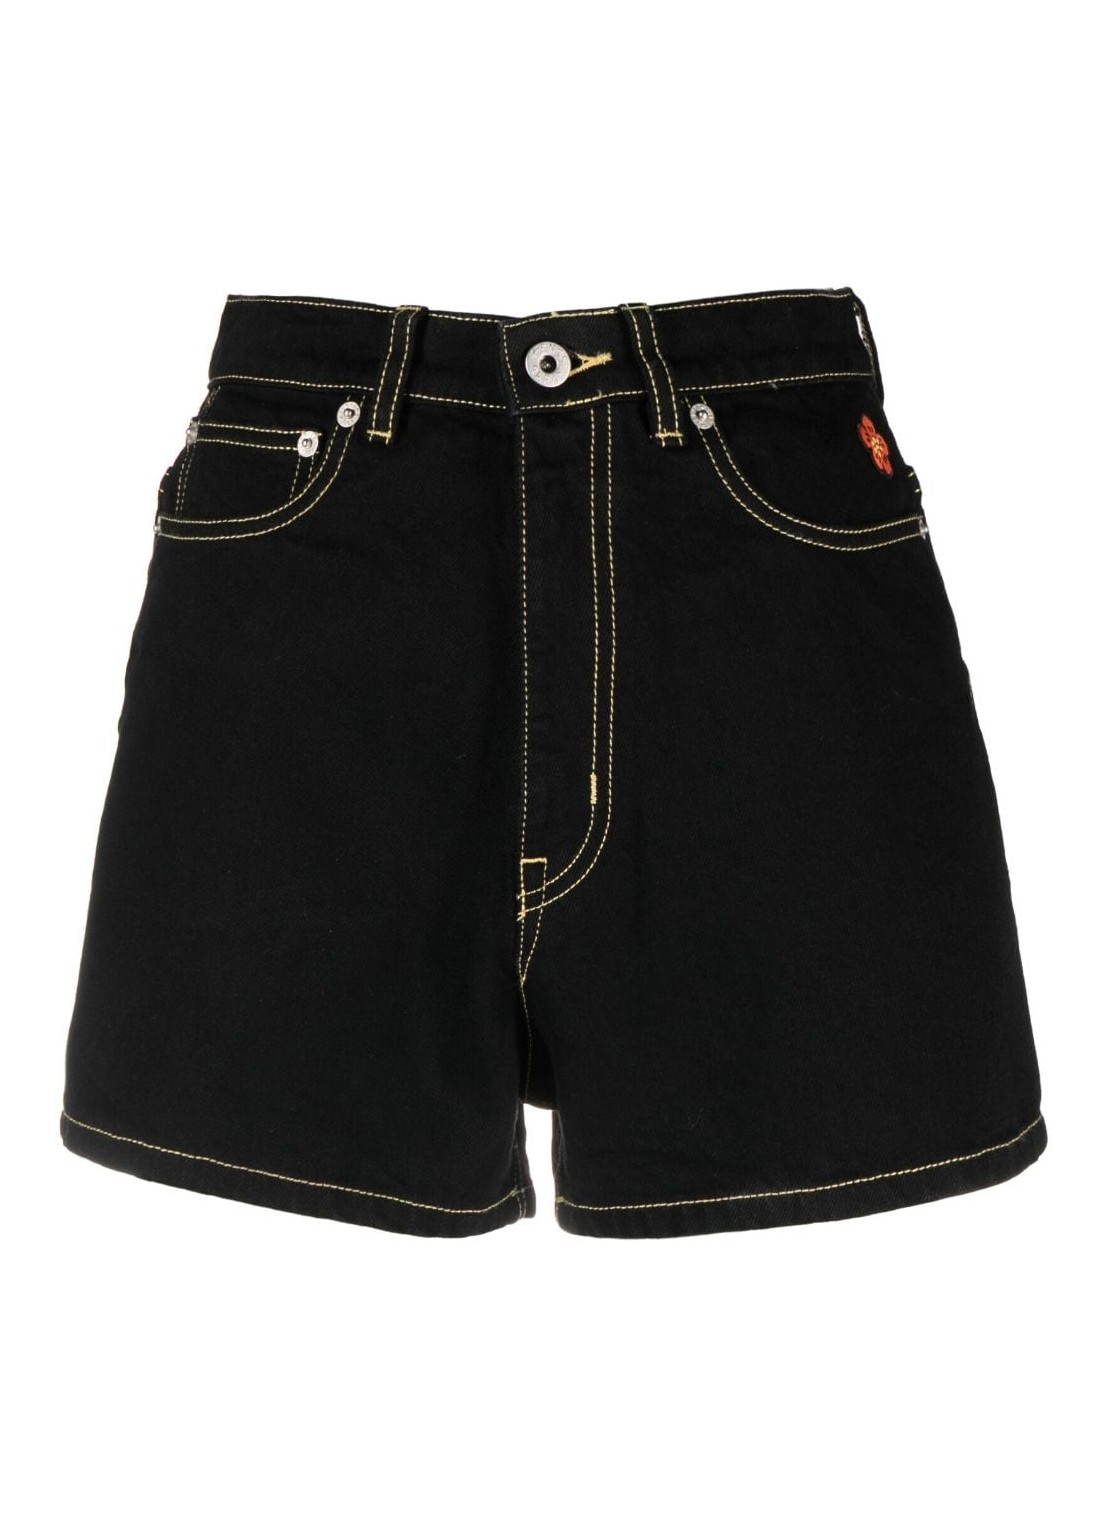 Pantalon corto kenzo short pant woman rinse black denim shorts fd62ds2006c1 bm talla 27
 